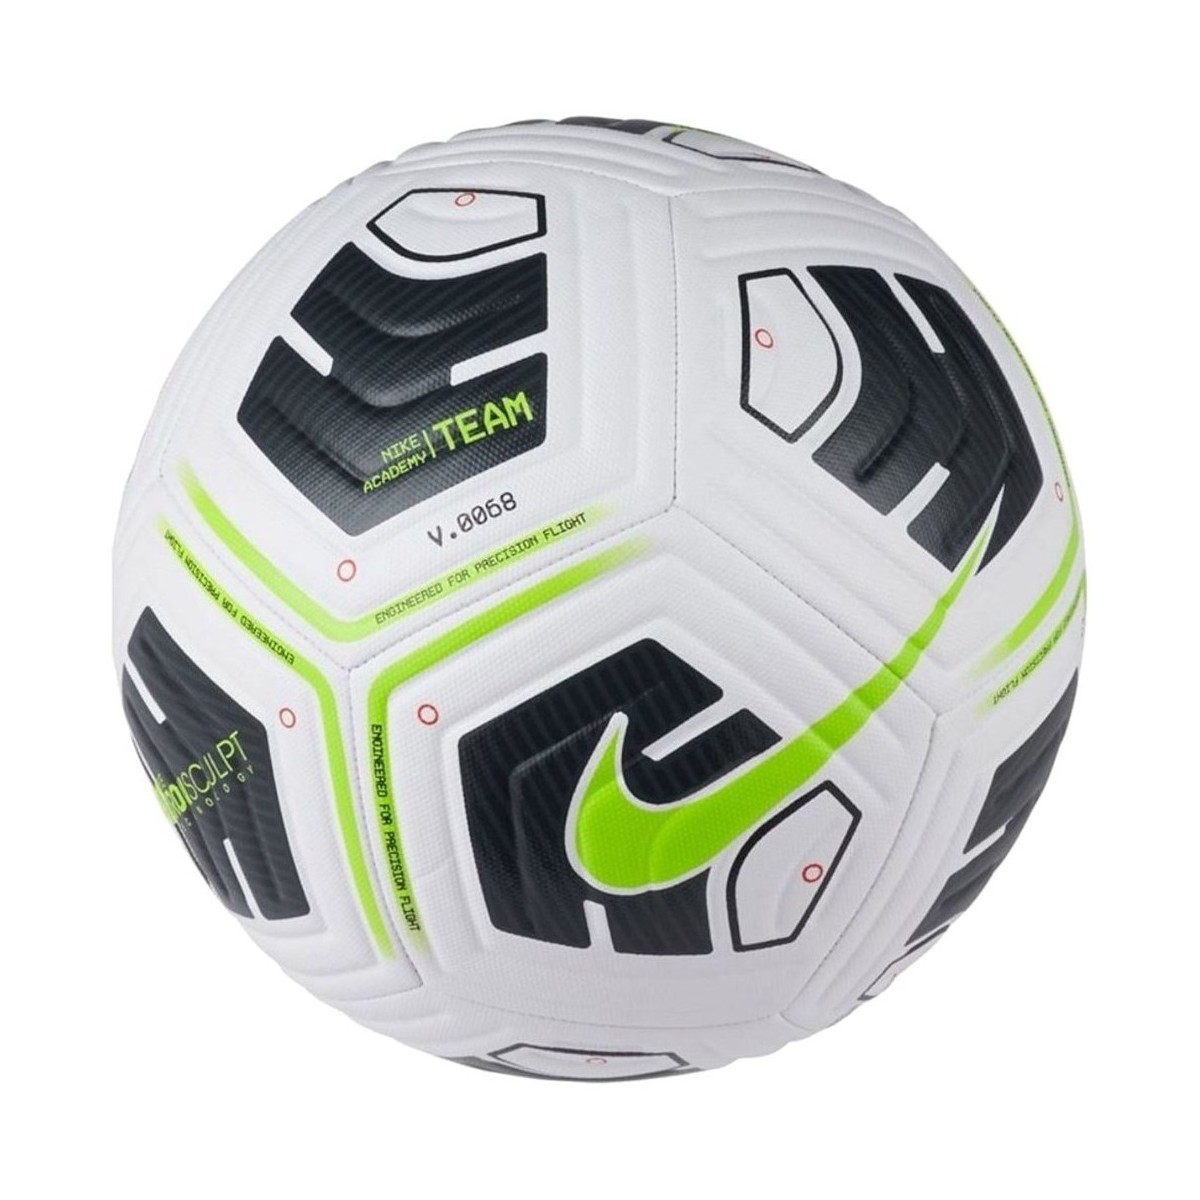 Accessoires Ballons de sport Nike Academy Team Ball Vert, Blanc